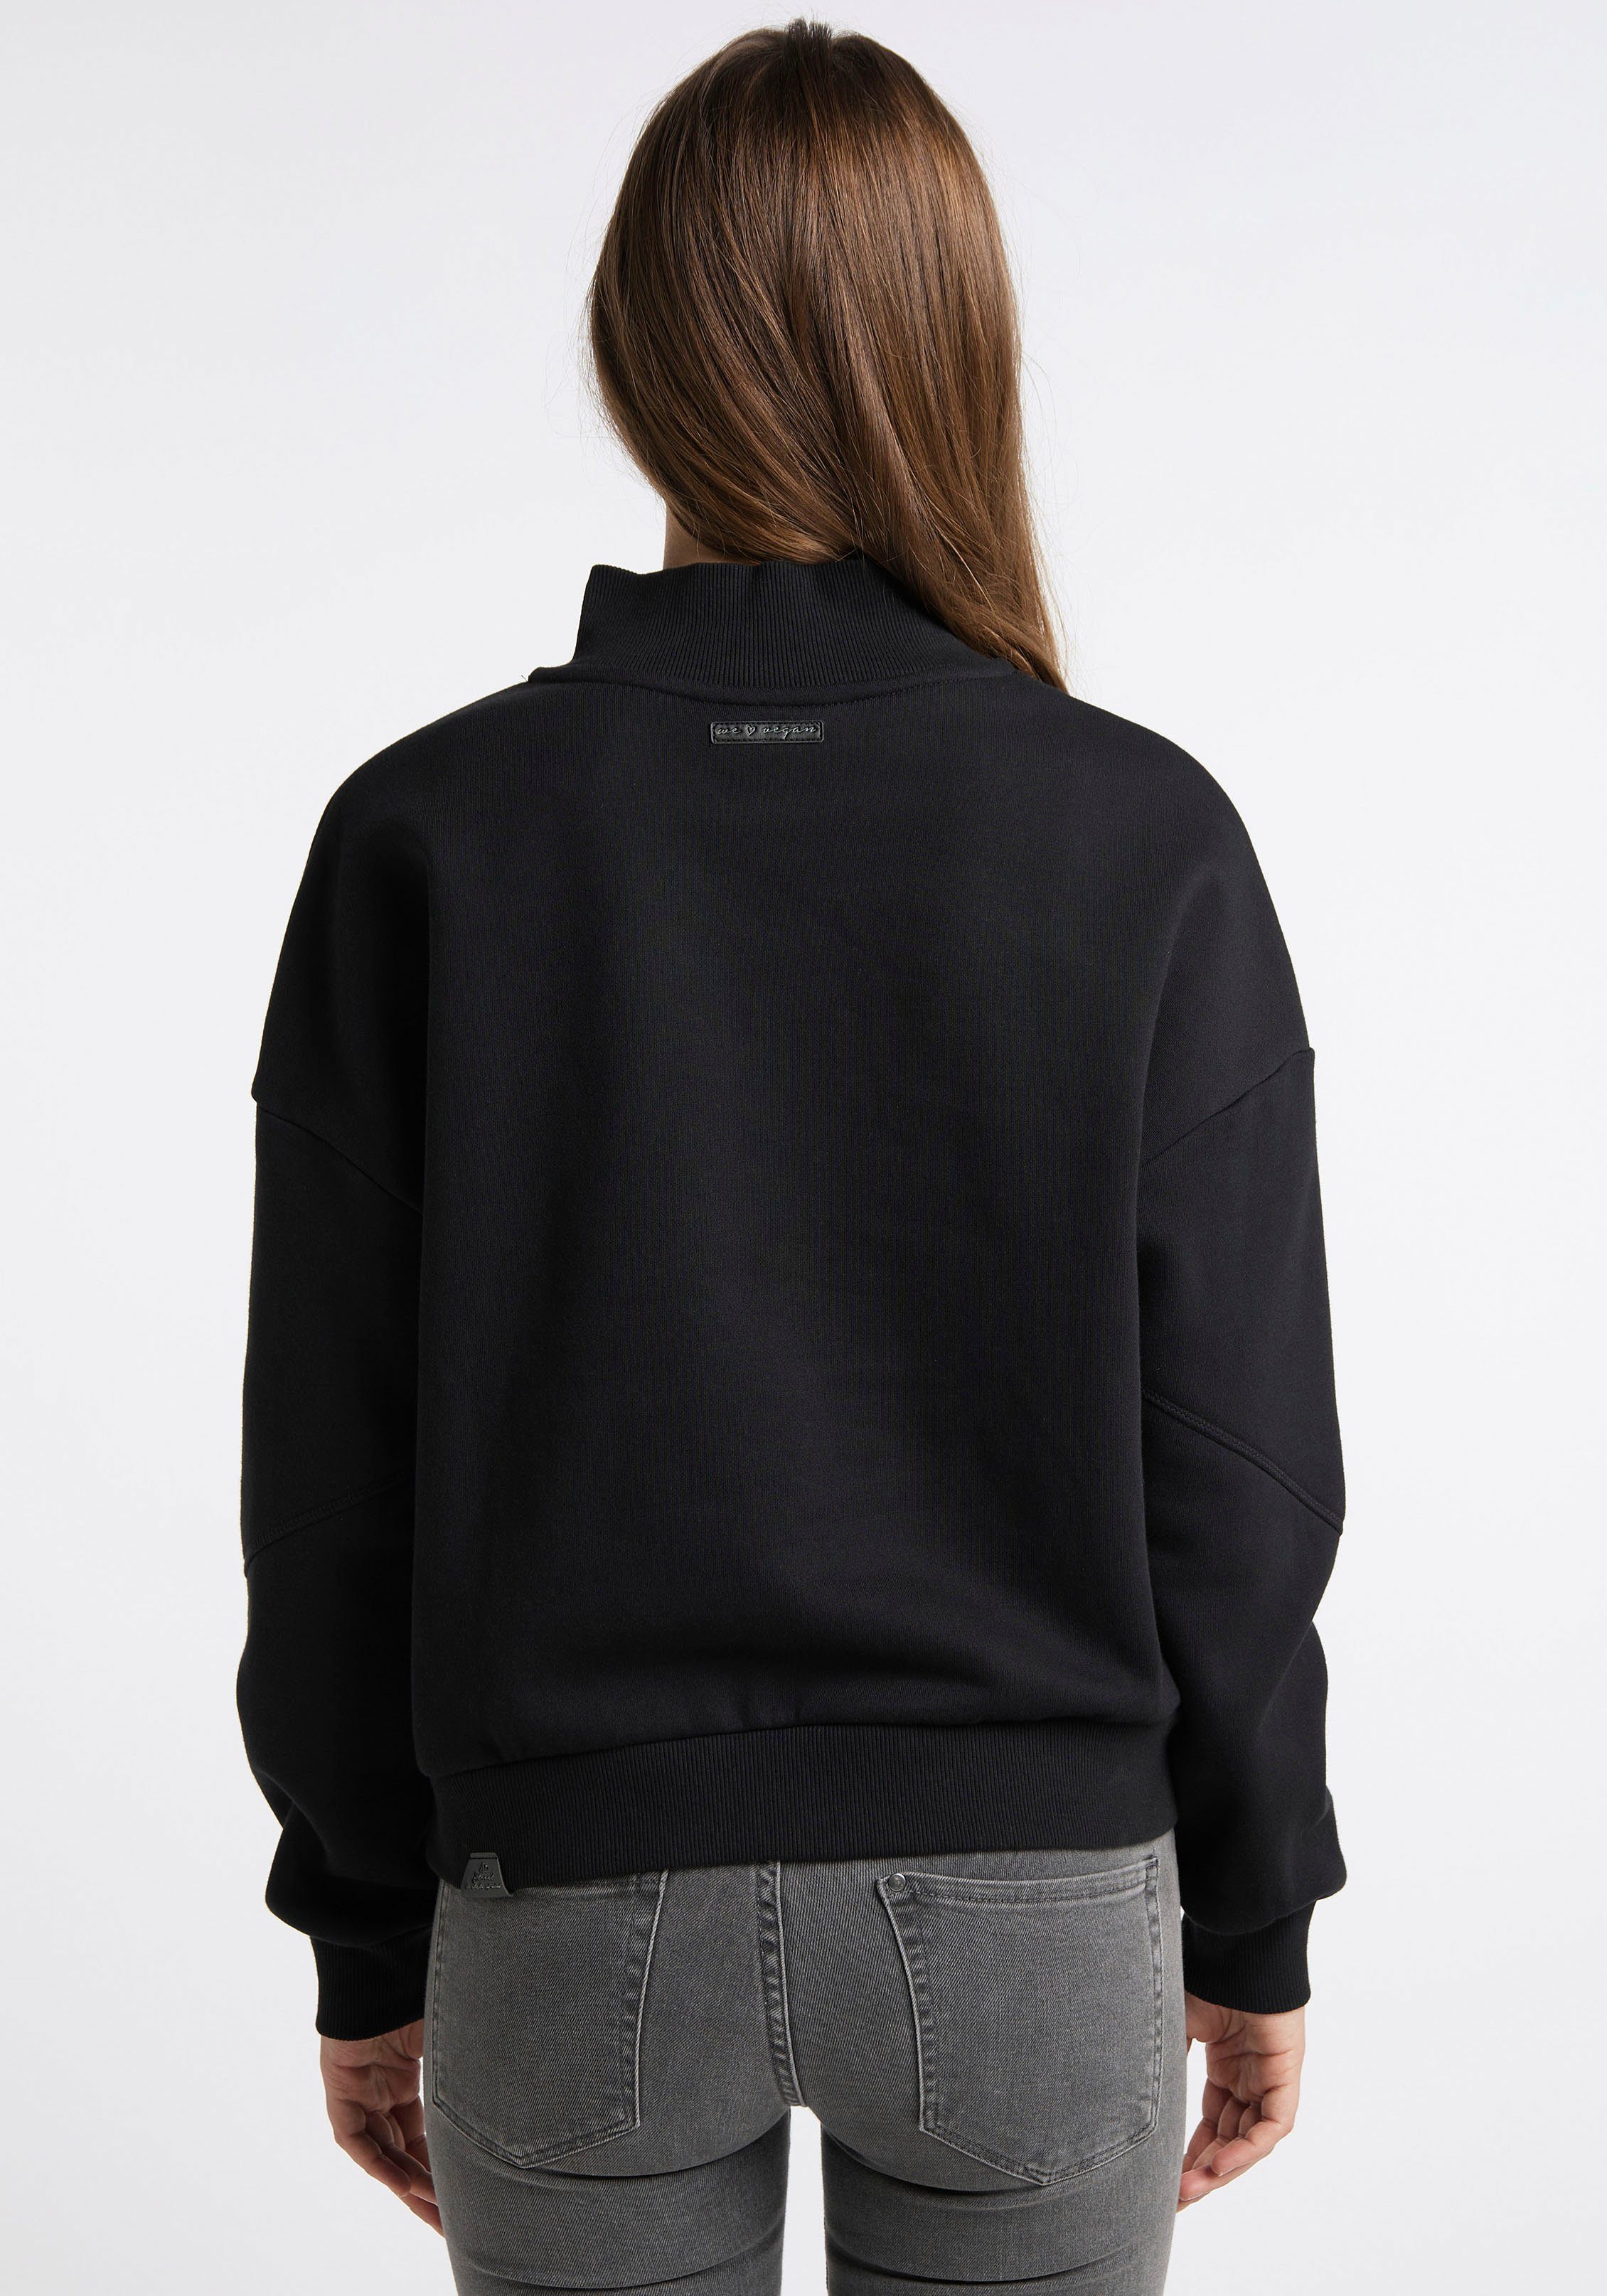 SWEAT KAILA black Ragwear 1010 Sweater